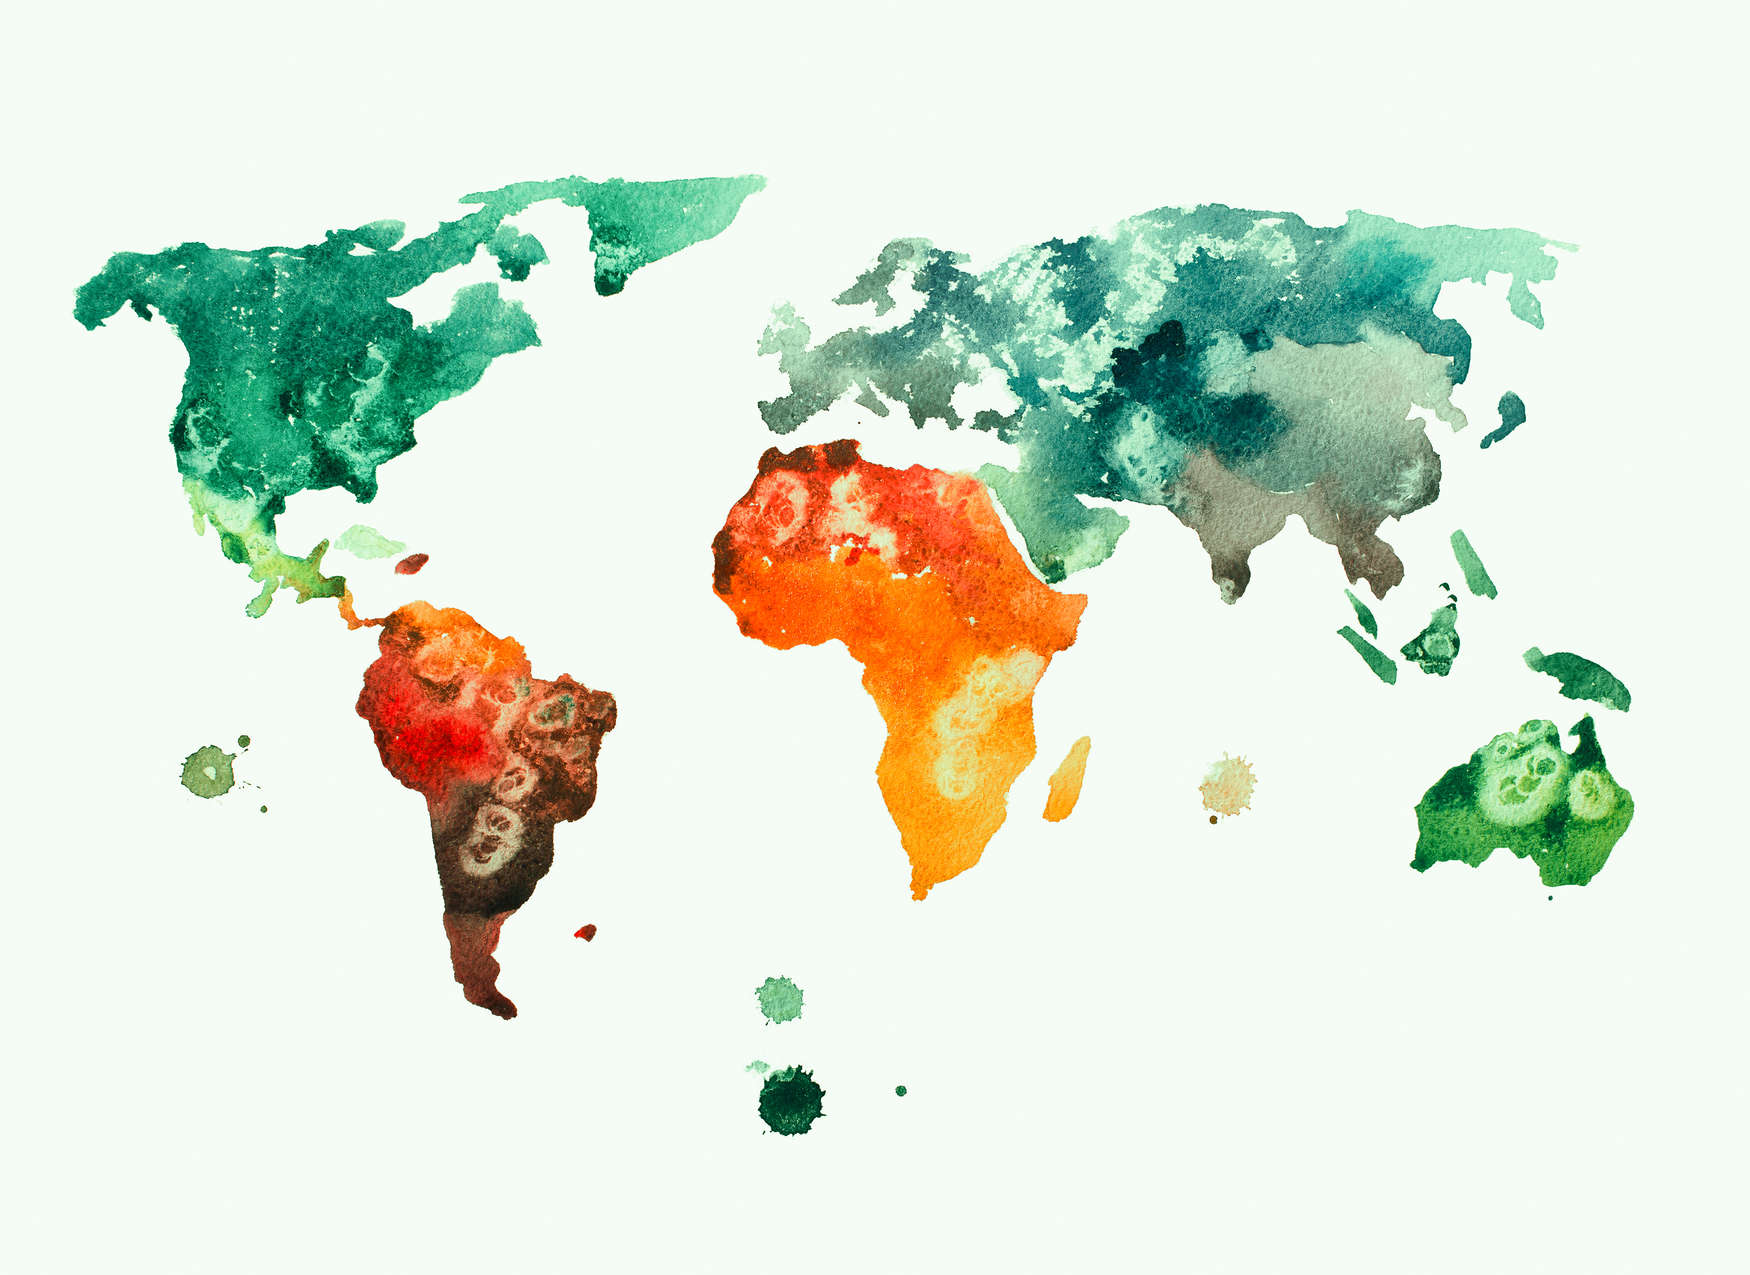             Wereldkaart Behang Aquarel - Kleurrijk, Wit, Groen
        